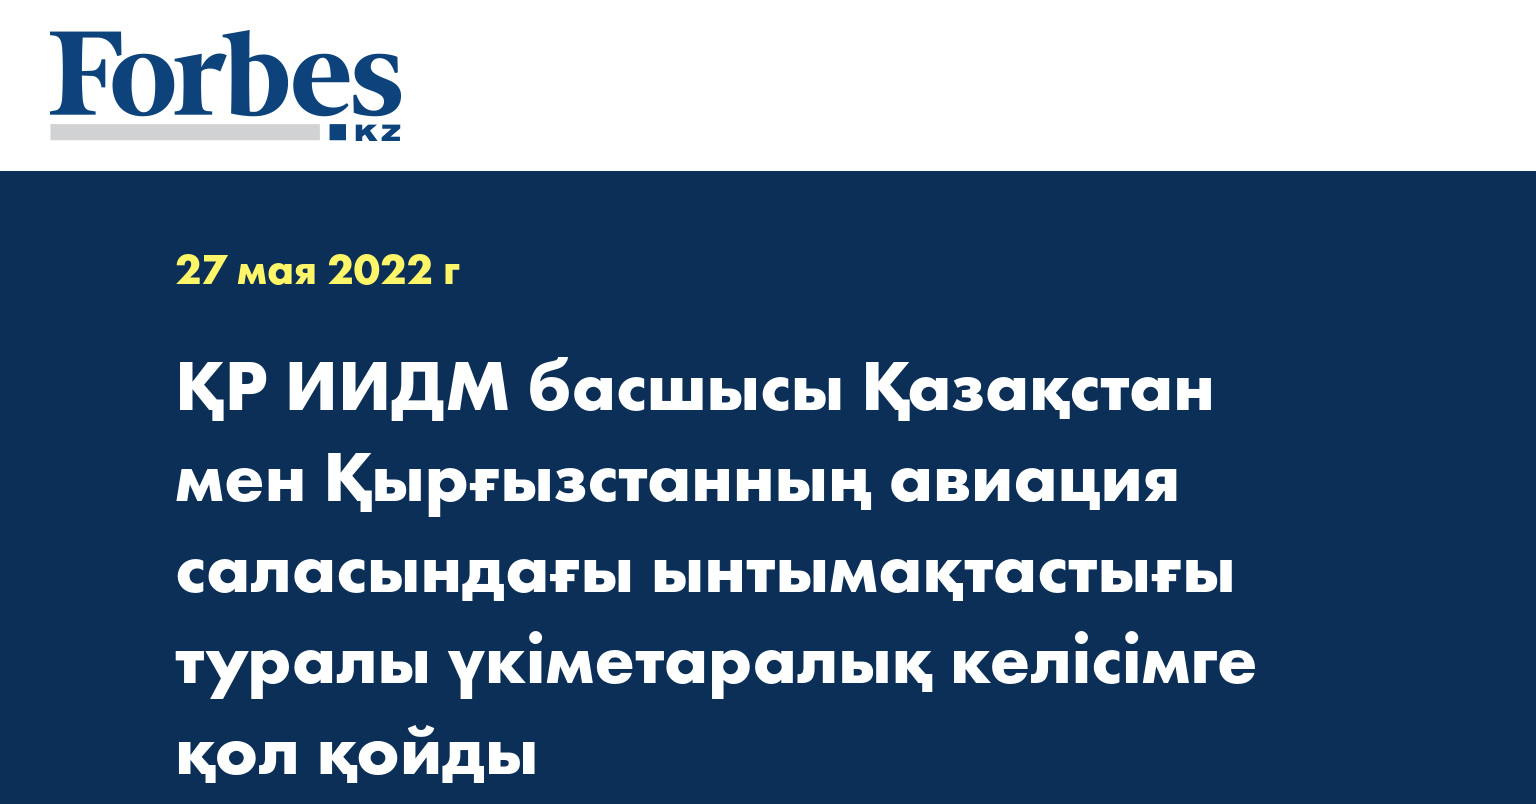 ҚР ИИДМ басшысы Қазақстан мен Қырғызстанның авиация саласындағы ынтымақтастығы туралы үкіметаралық келісімге қол қойды